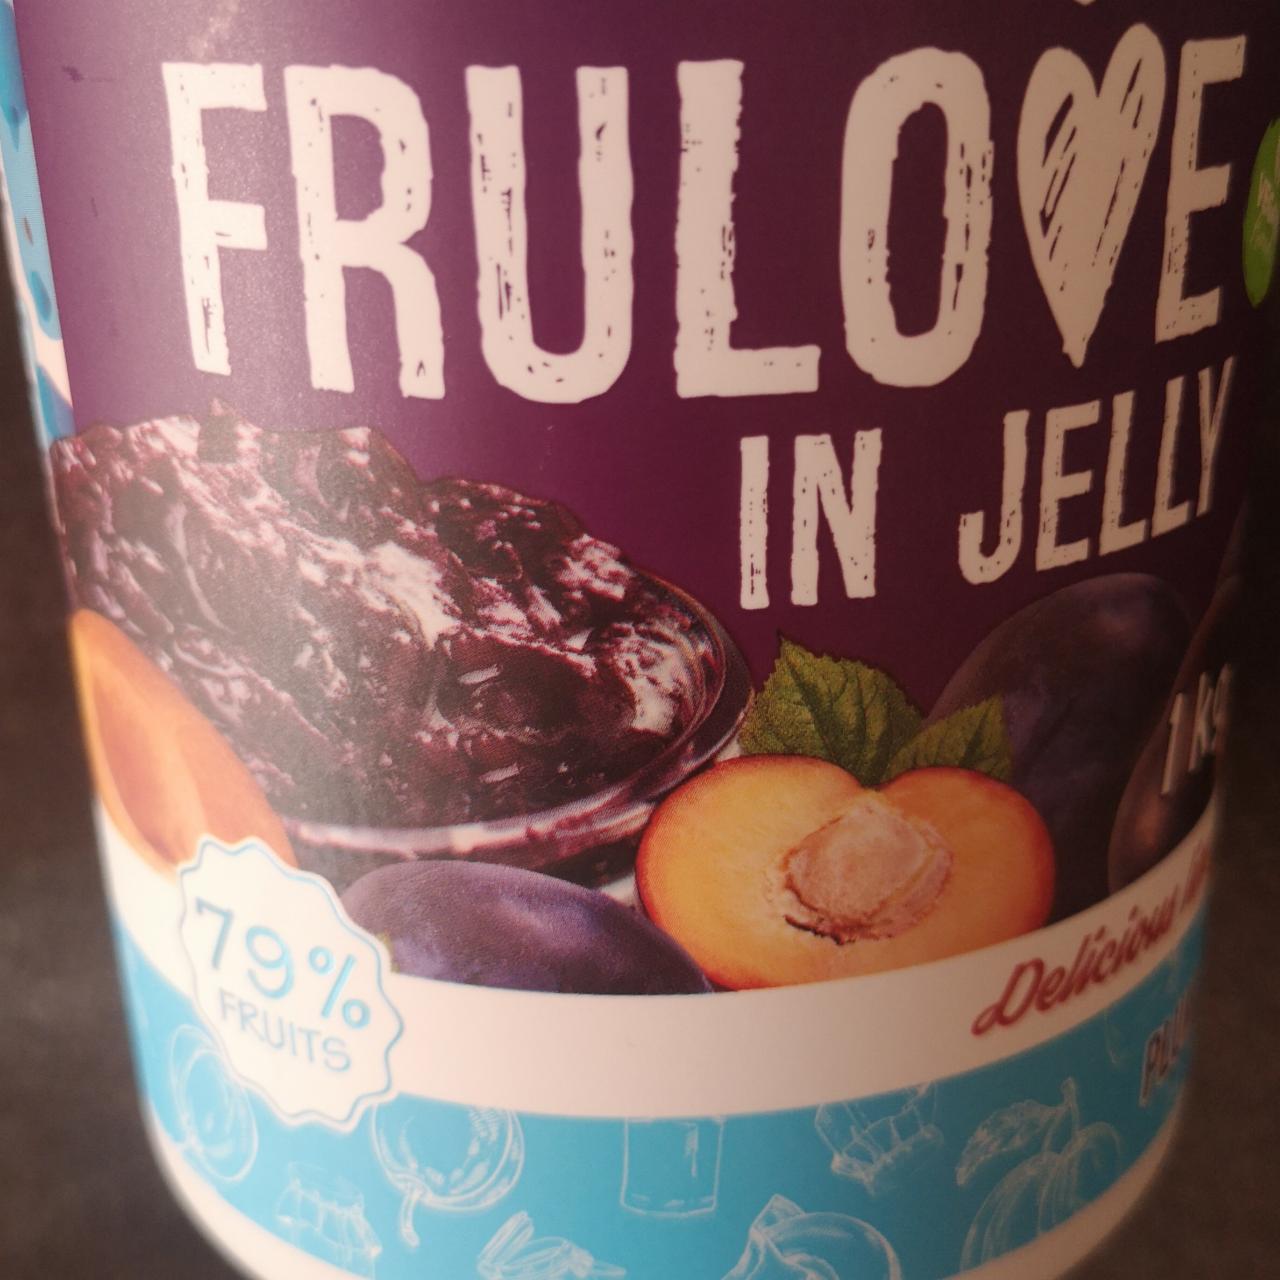 Fotografie - Frulove in jelly Plum Allnutrition